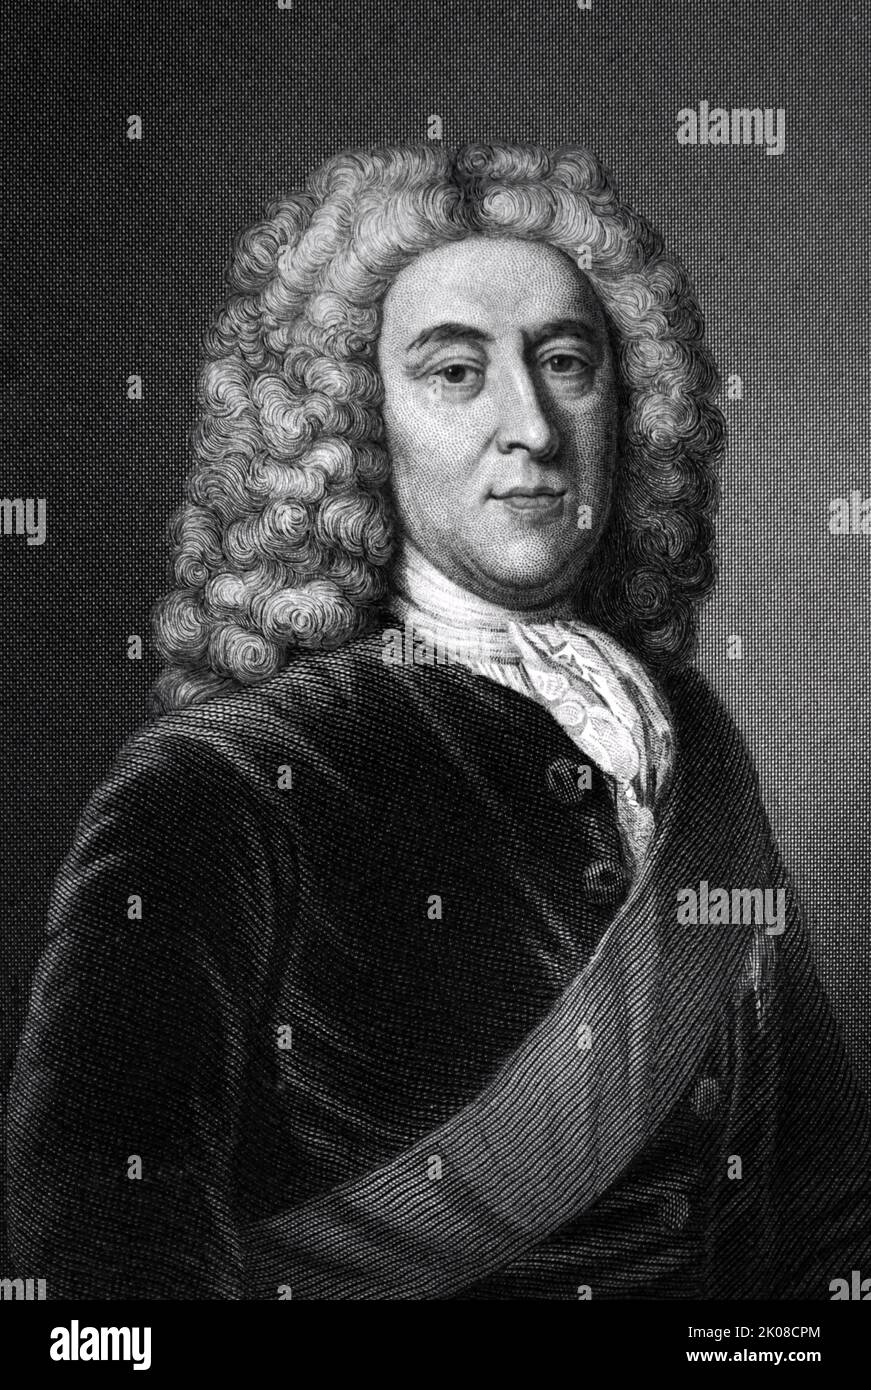 William Pitt, 1. Earl of Chatham, PC, FRS (15. November 1708 - 11. Mai 1778) war ein britischer Staatsmann der Whig-Gruppe, der Mitte des 18.. Jahrhunderts als Premierminister Großbritanniens diente Stockfoto